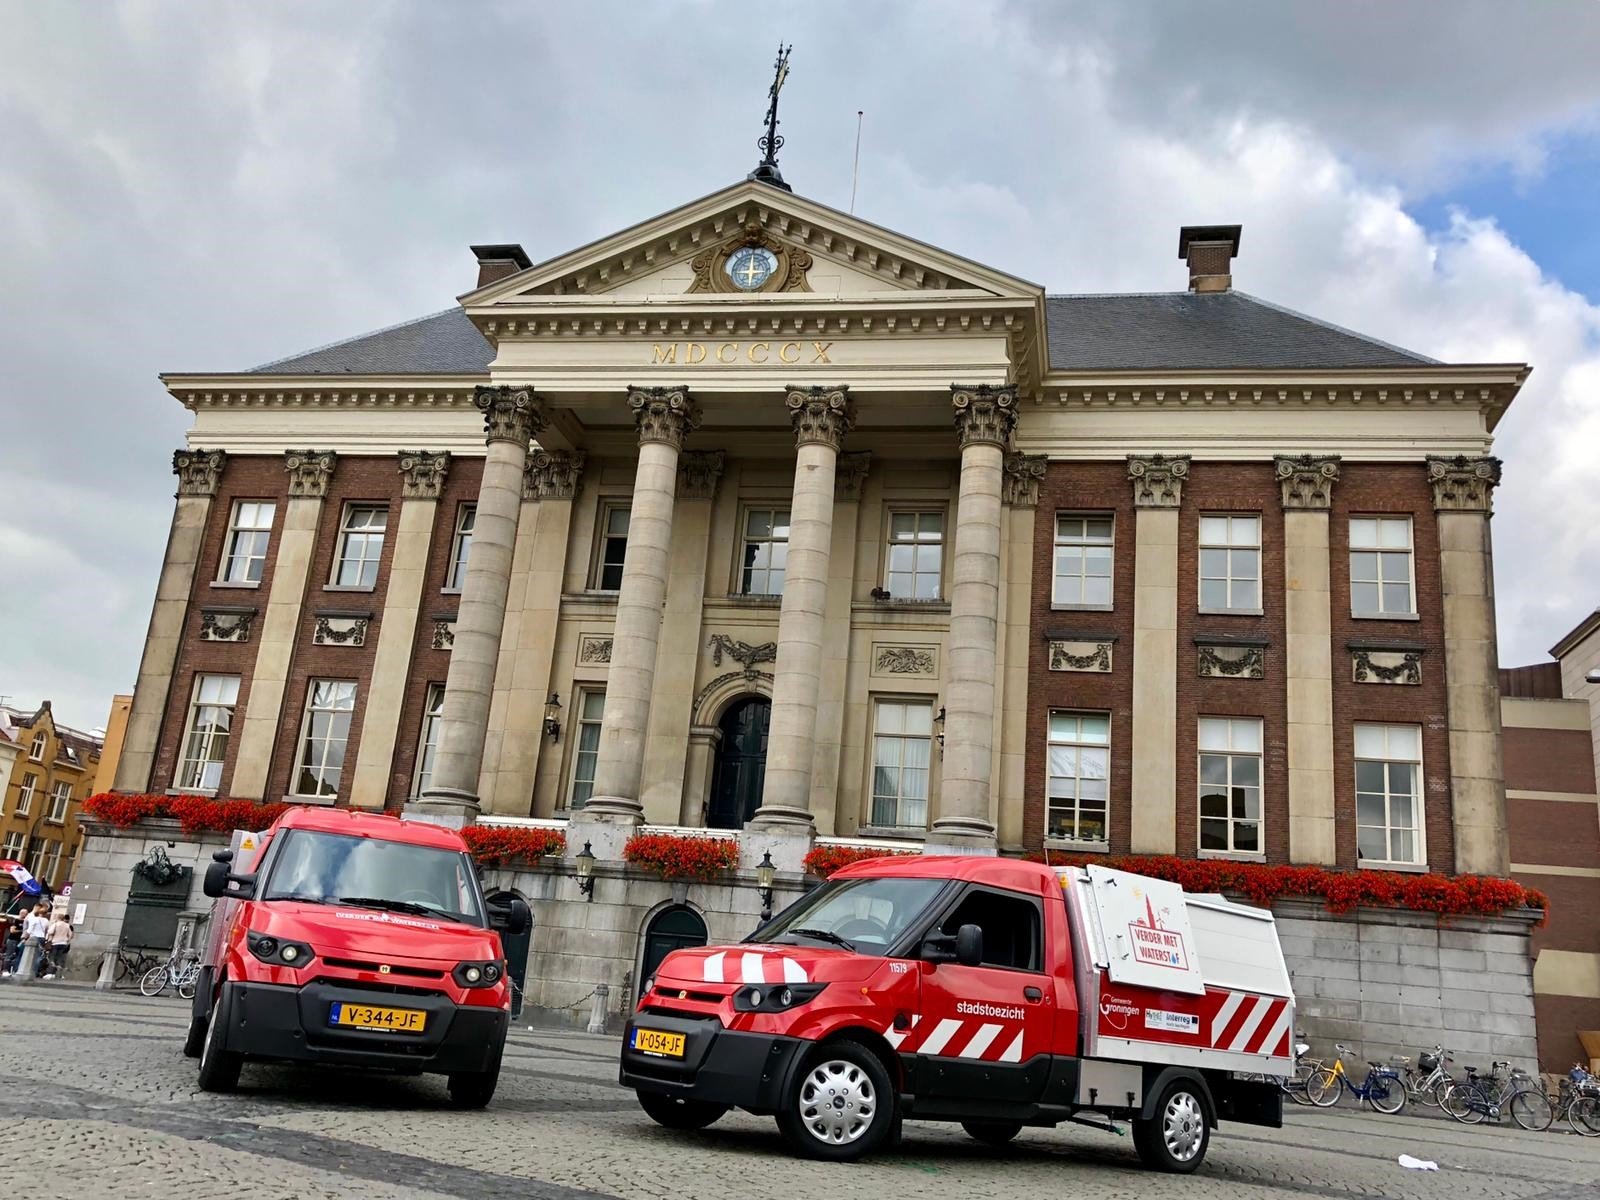 Waterstofauto's van de gemeente voor het Stadhuis in Groningen